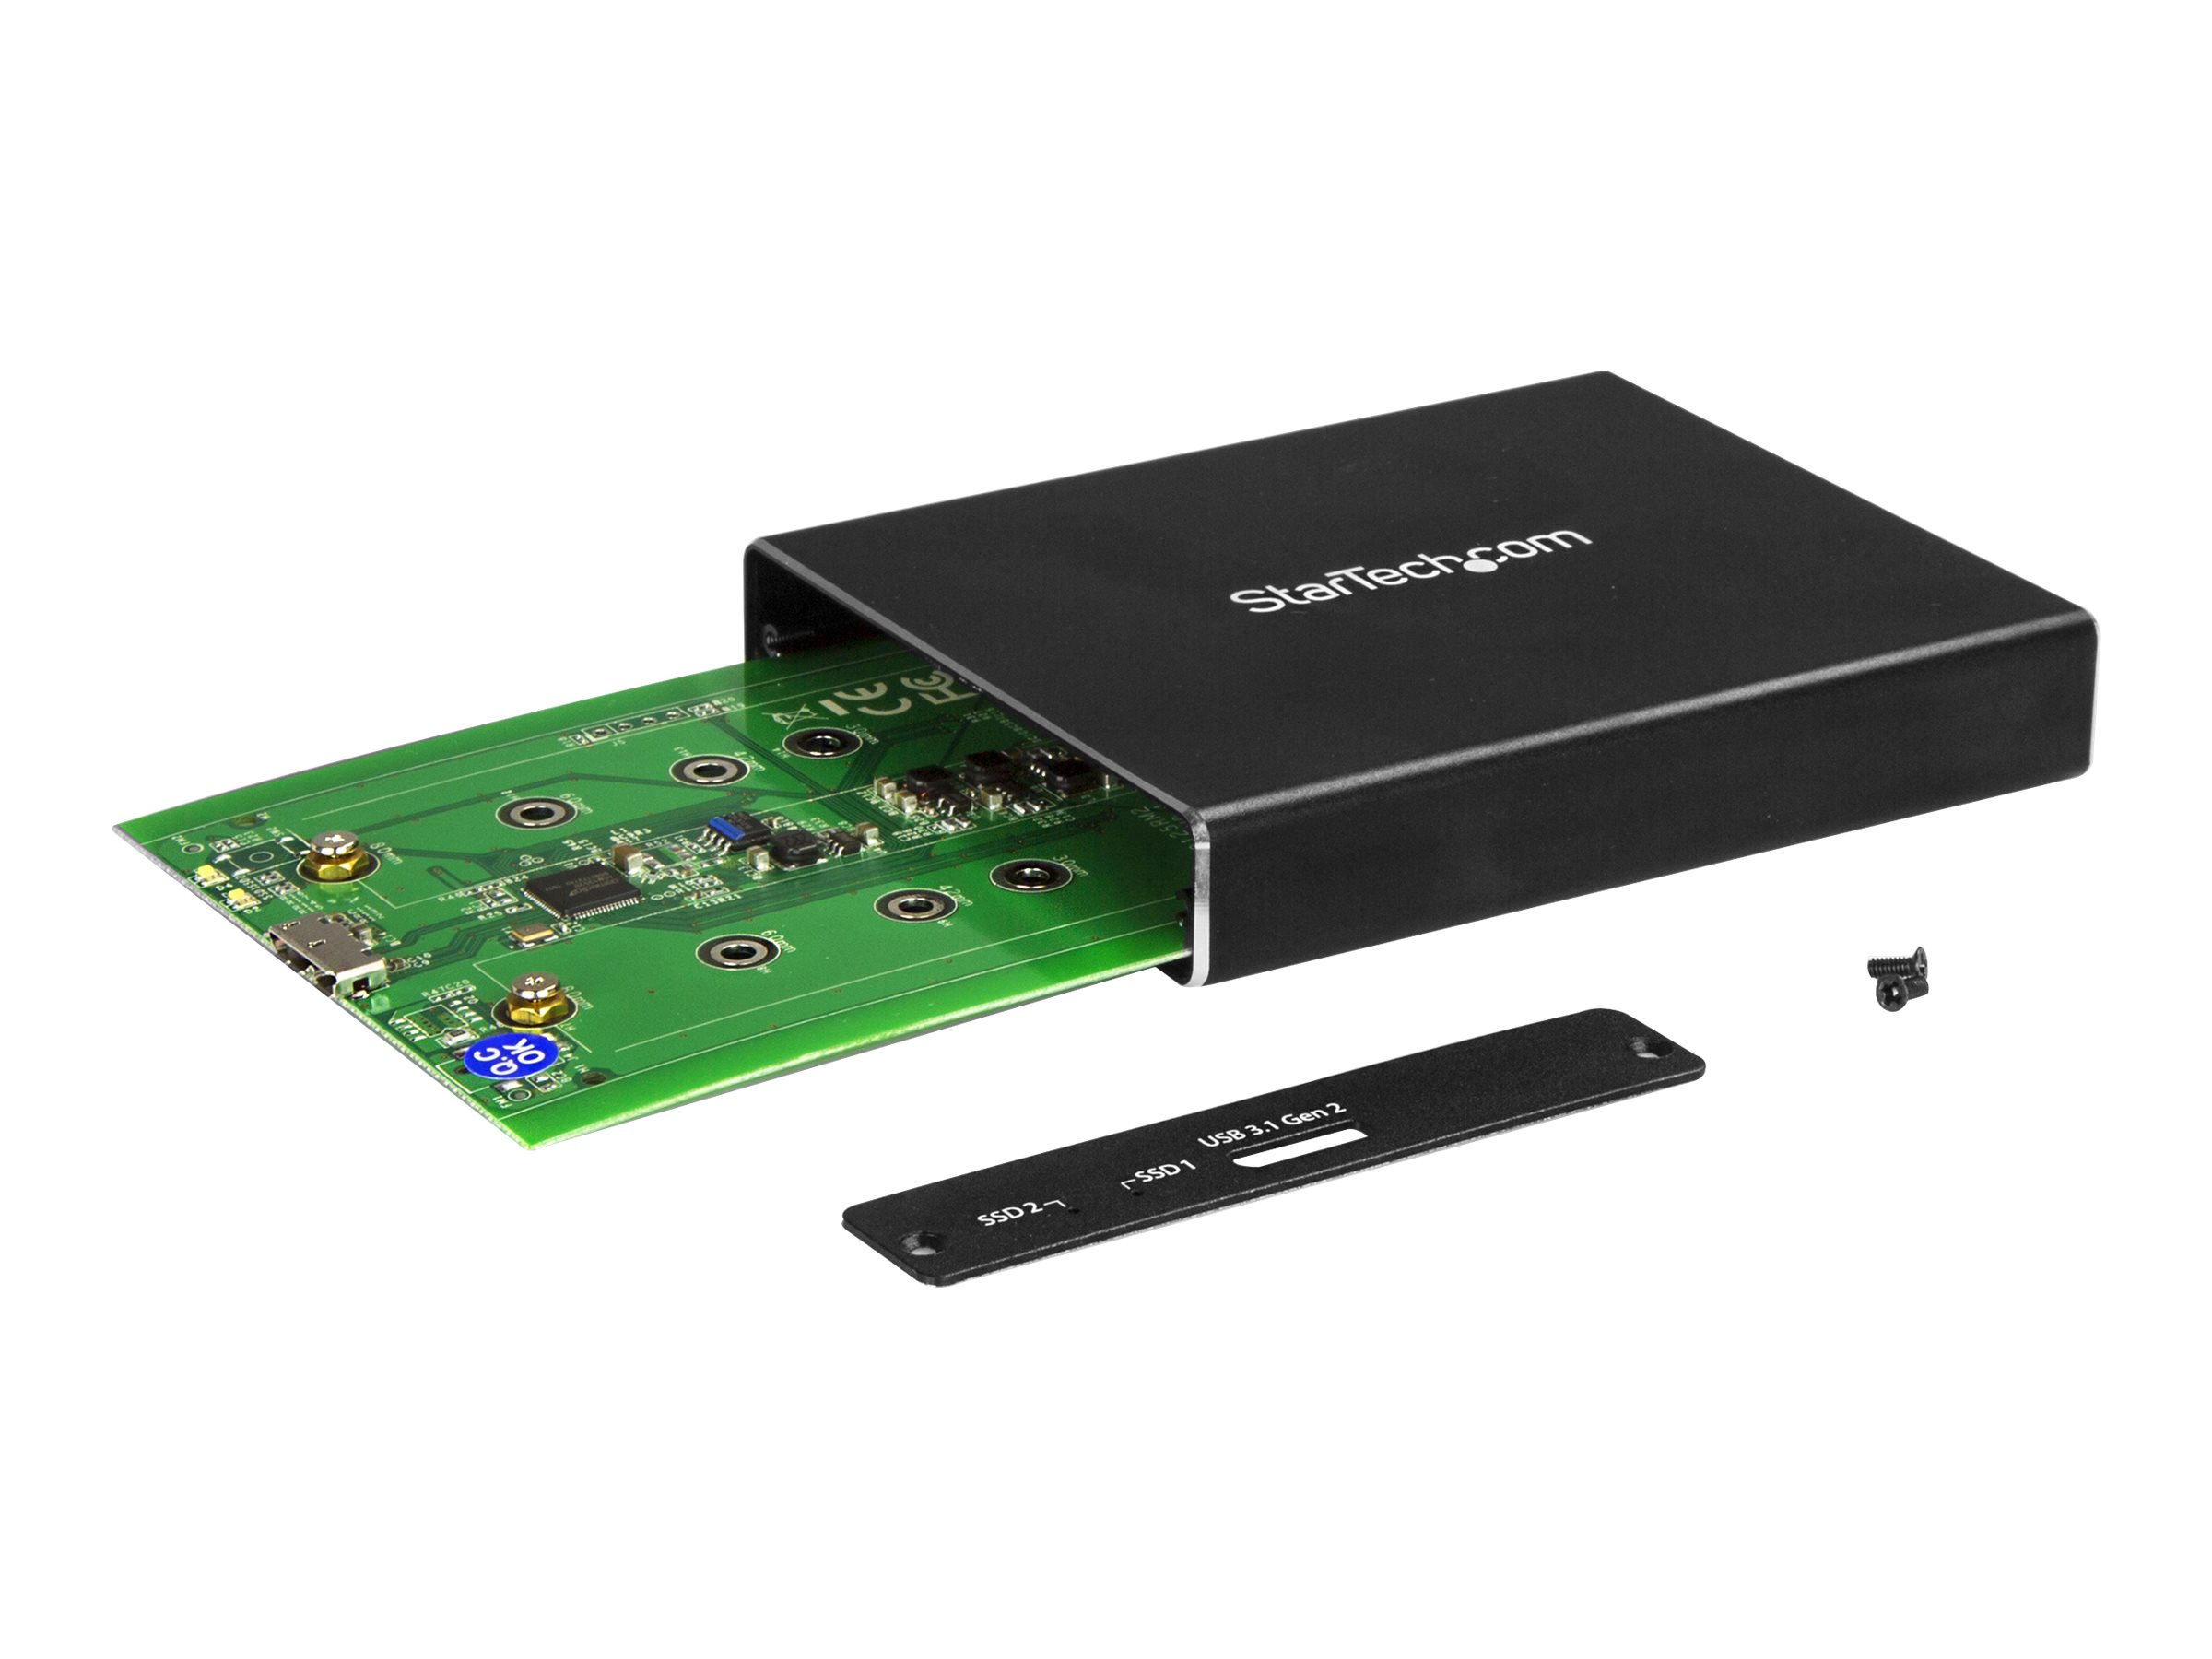 StarTech.com SSD Festplattengehäuse für zwei M.2 Festplatten - USB 3.1 Type C - USB C Kabel - USB 3.1 Case zu 2x M2 Adapter - Flash-Speicher-Array